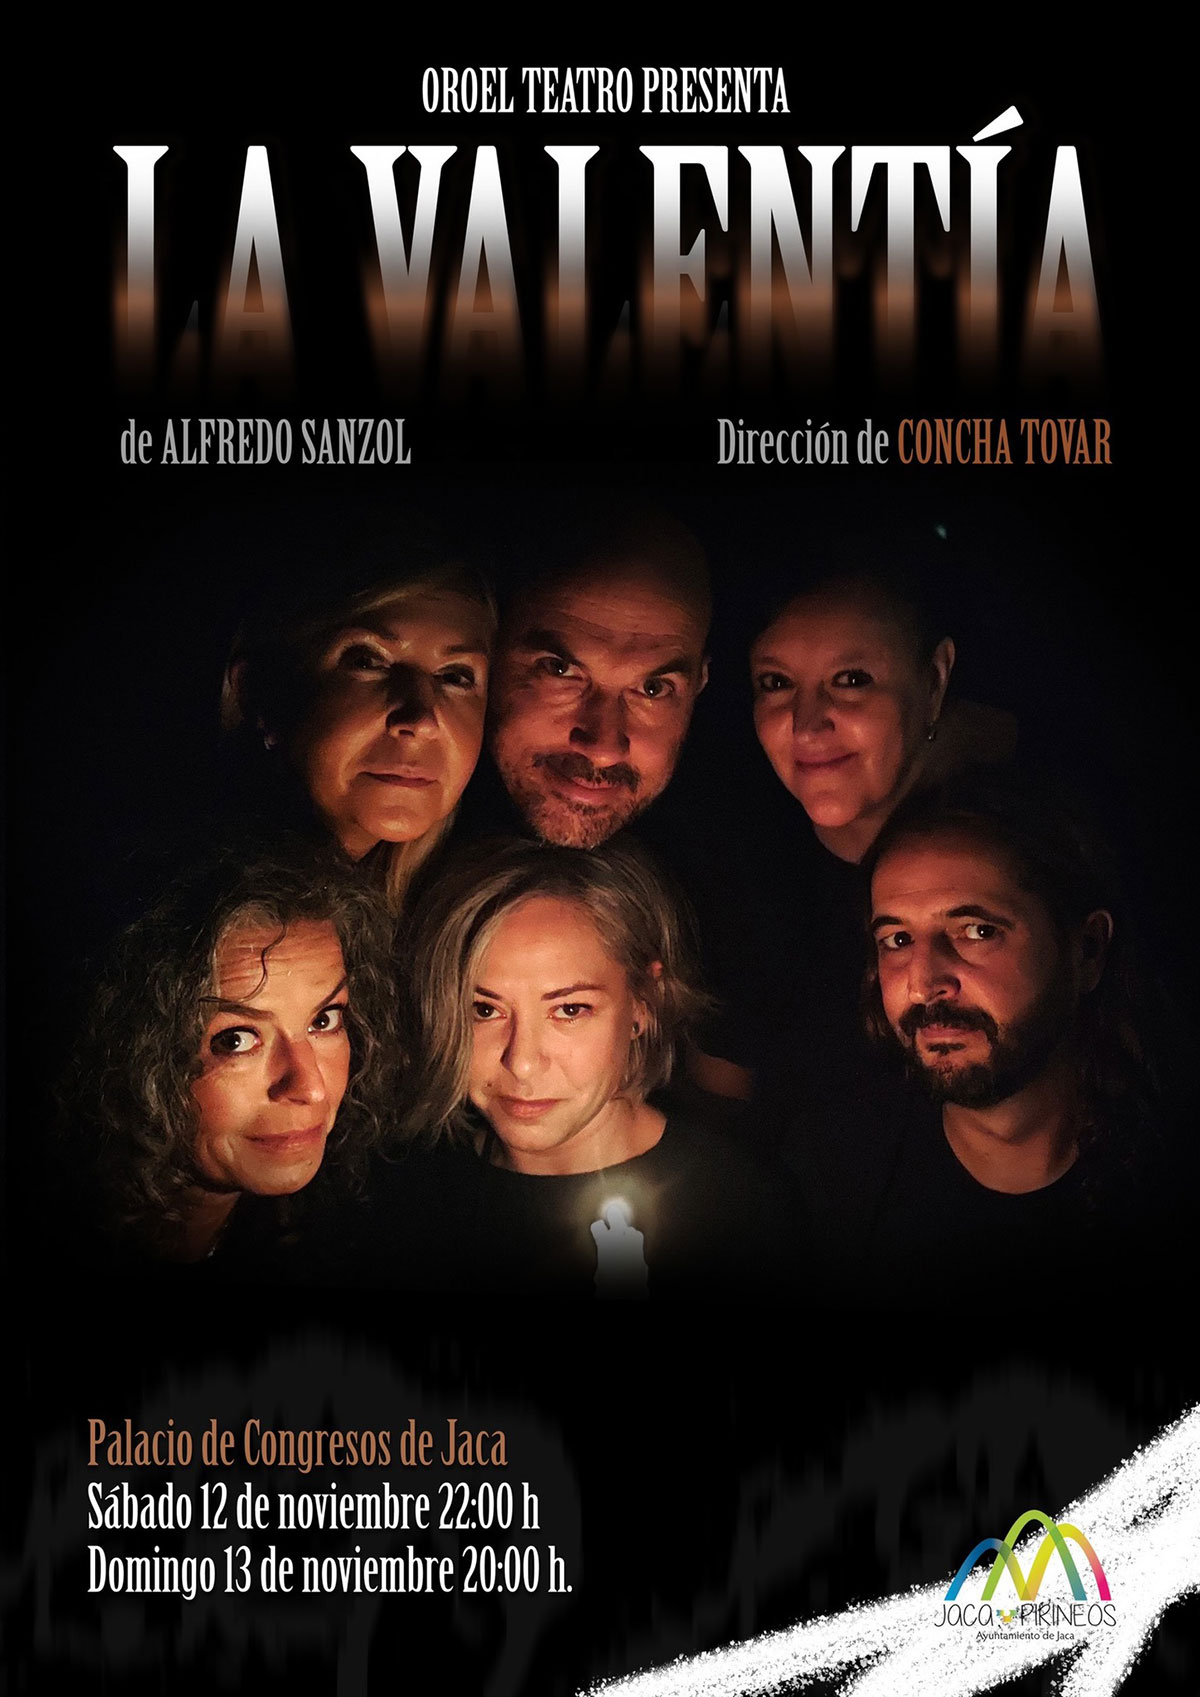 Oroel Teatro presenta "La Valentía" de Alfredo Sanzol. Dirección de Concha Tovar.